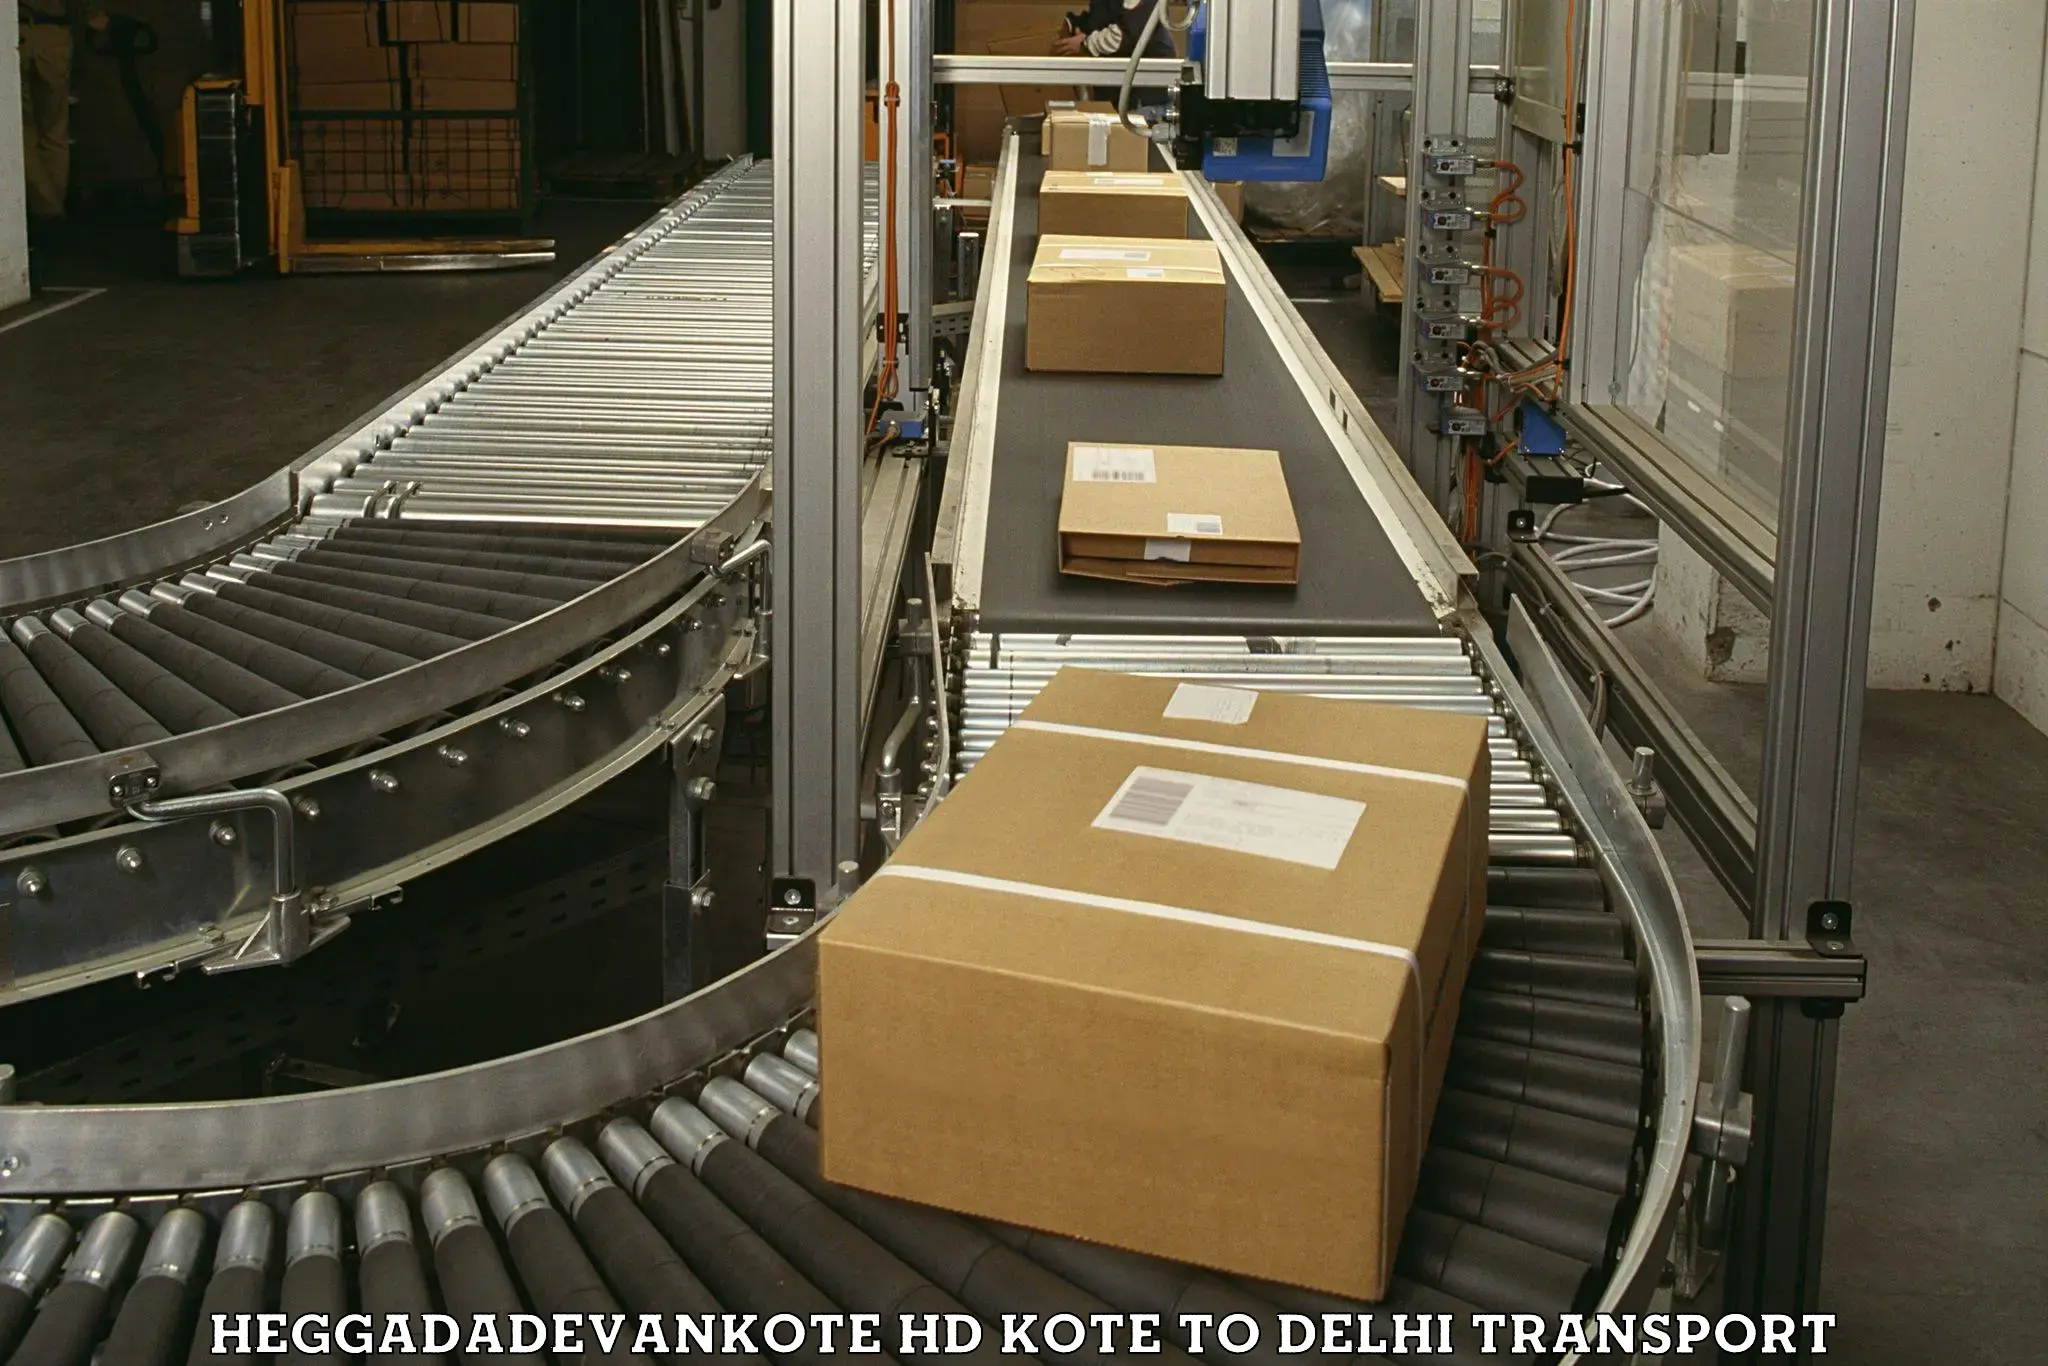 Shipping partner Heggadadevankote HD Kote to Delhi